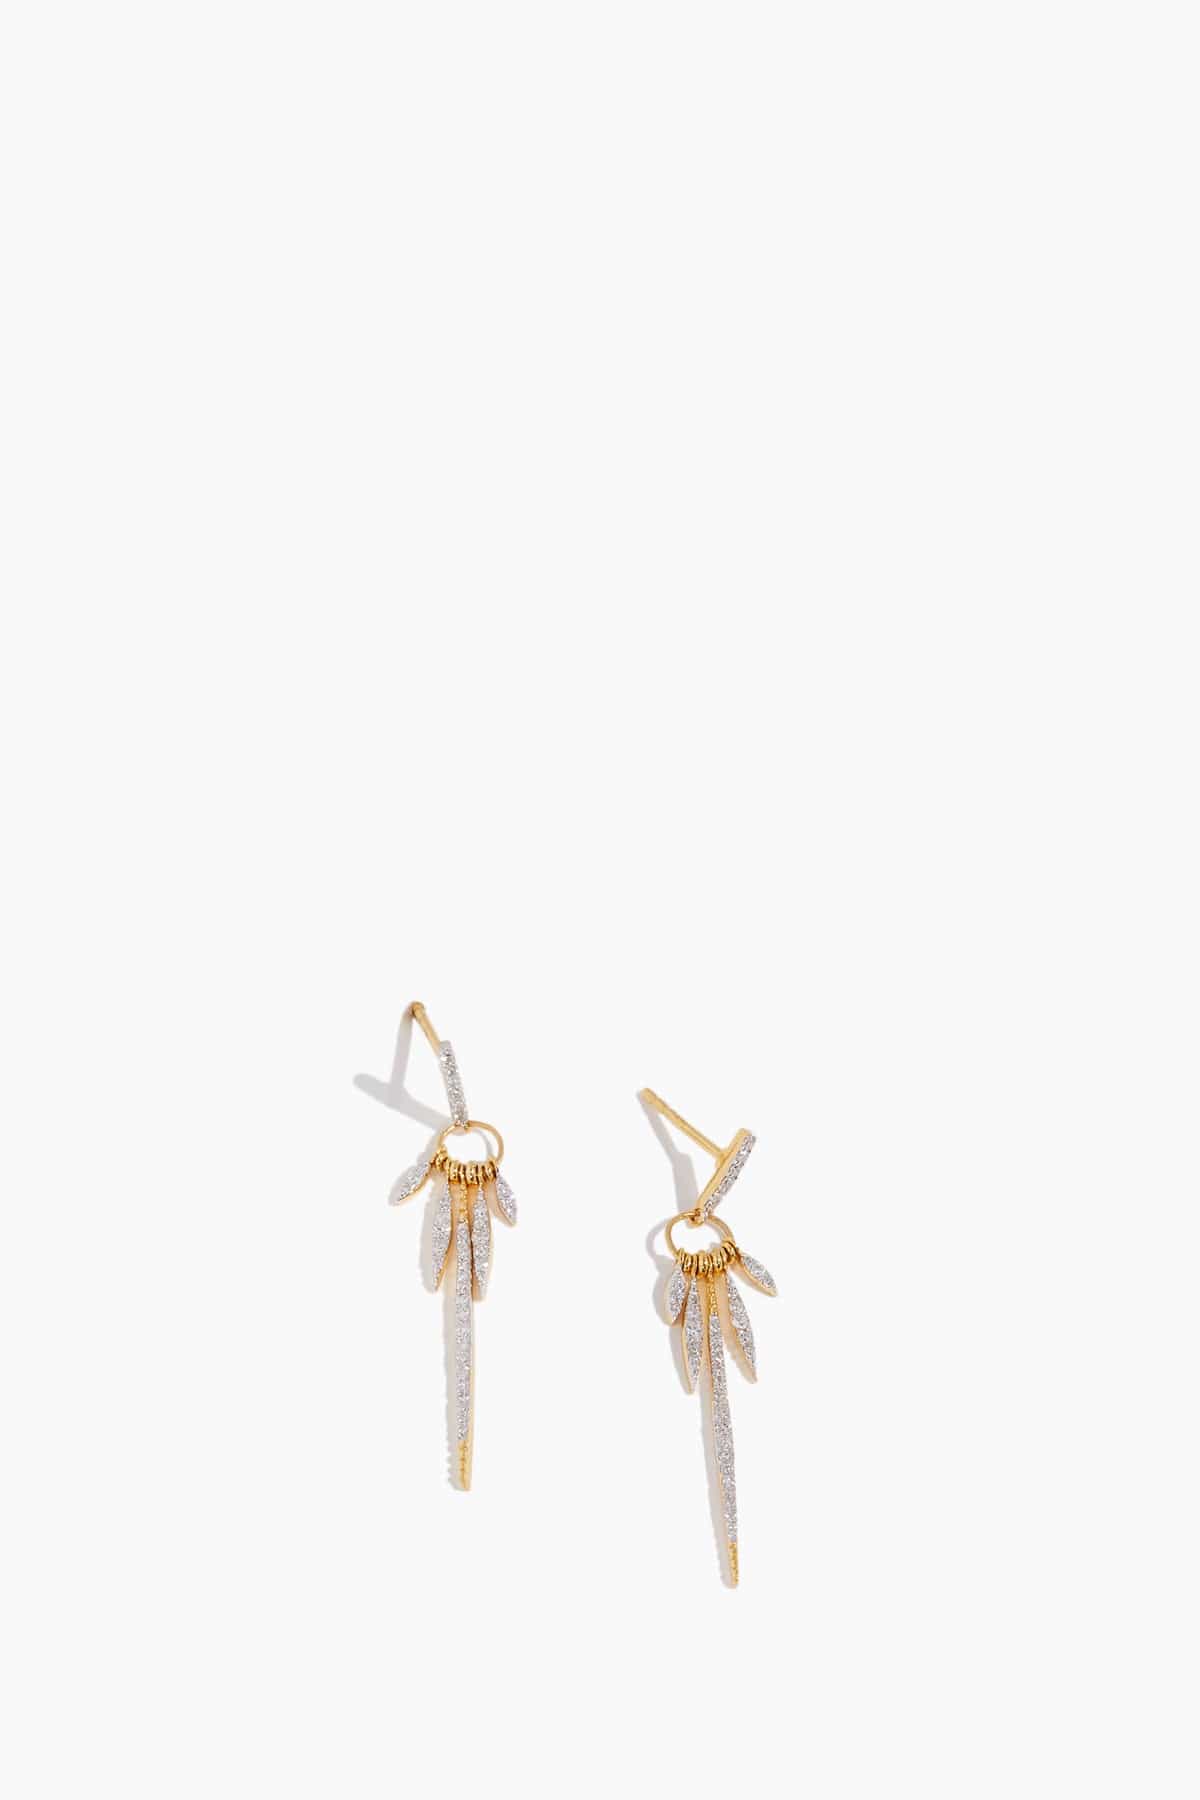 Vintage La Rose Earrings Drop Spike Earrings in 14K Yellow Gold